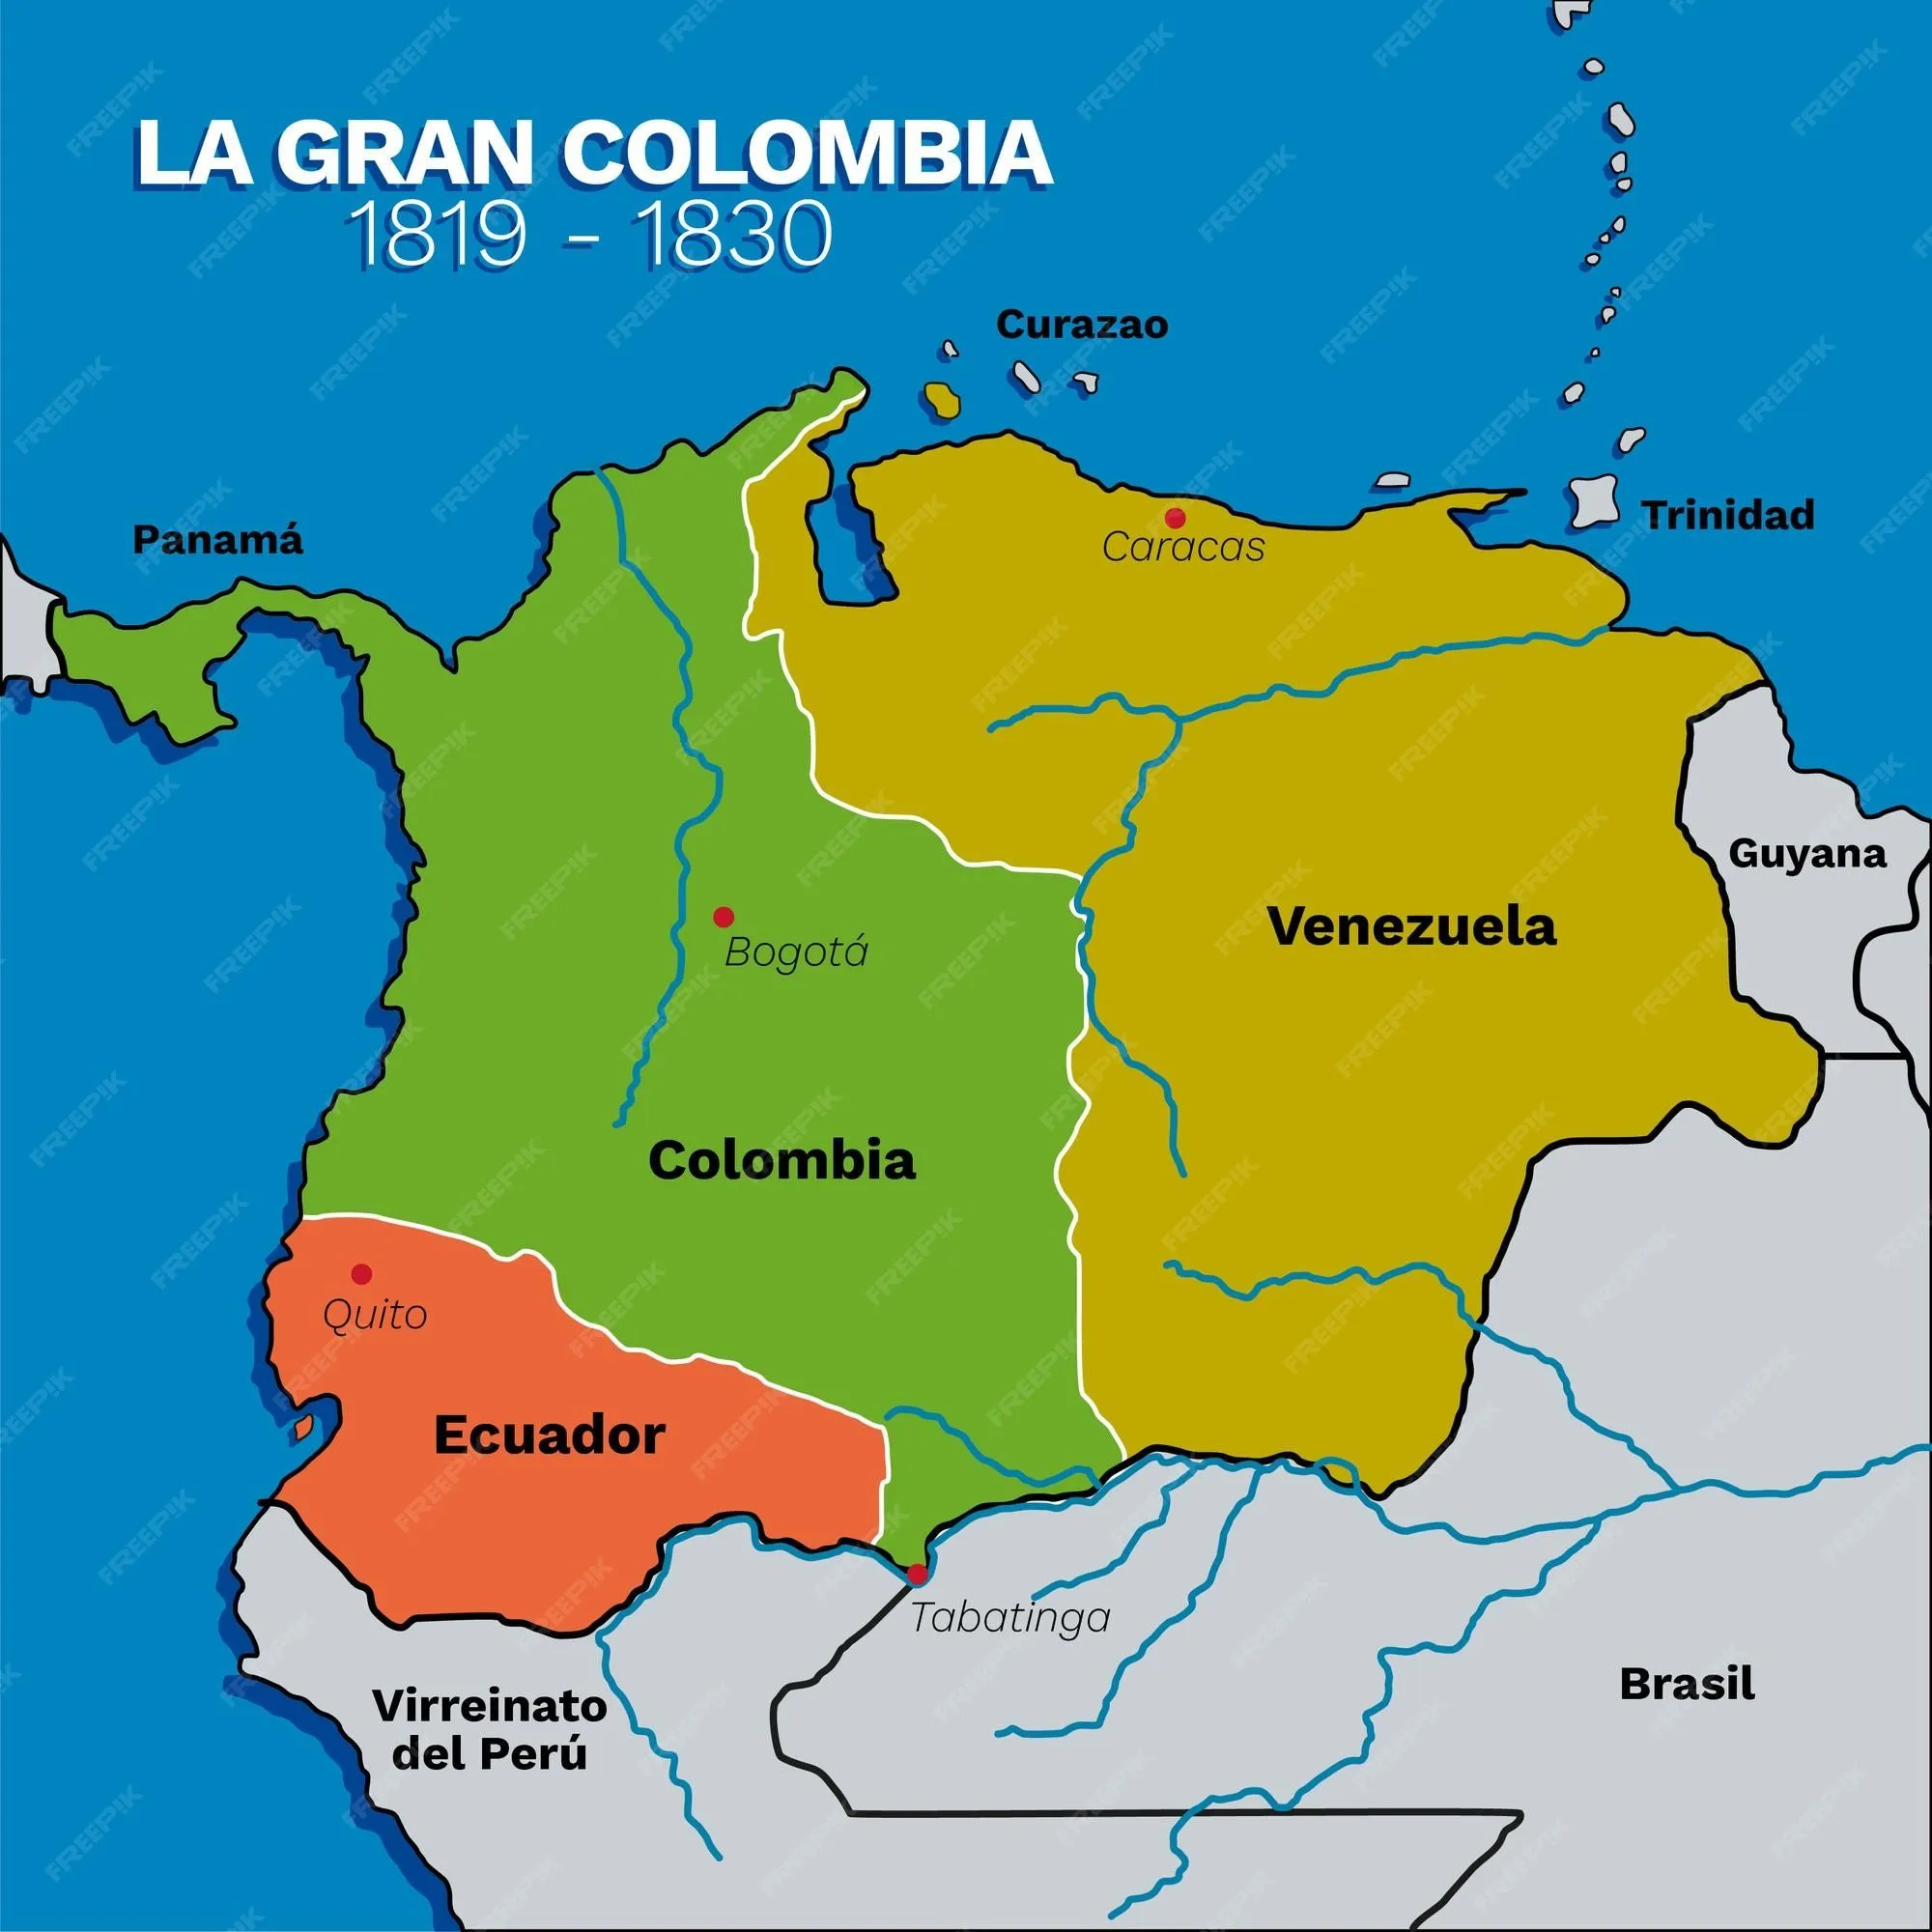 Mapa del virreinato de la gran colombia entre 1819 y 1830 | Vector Premium